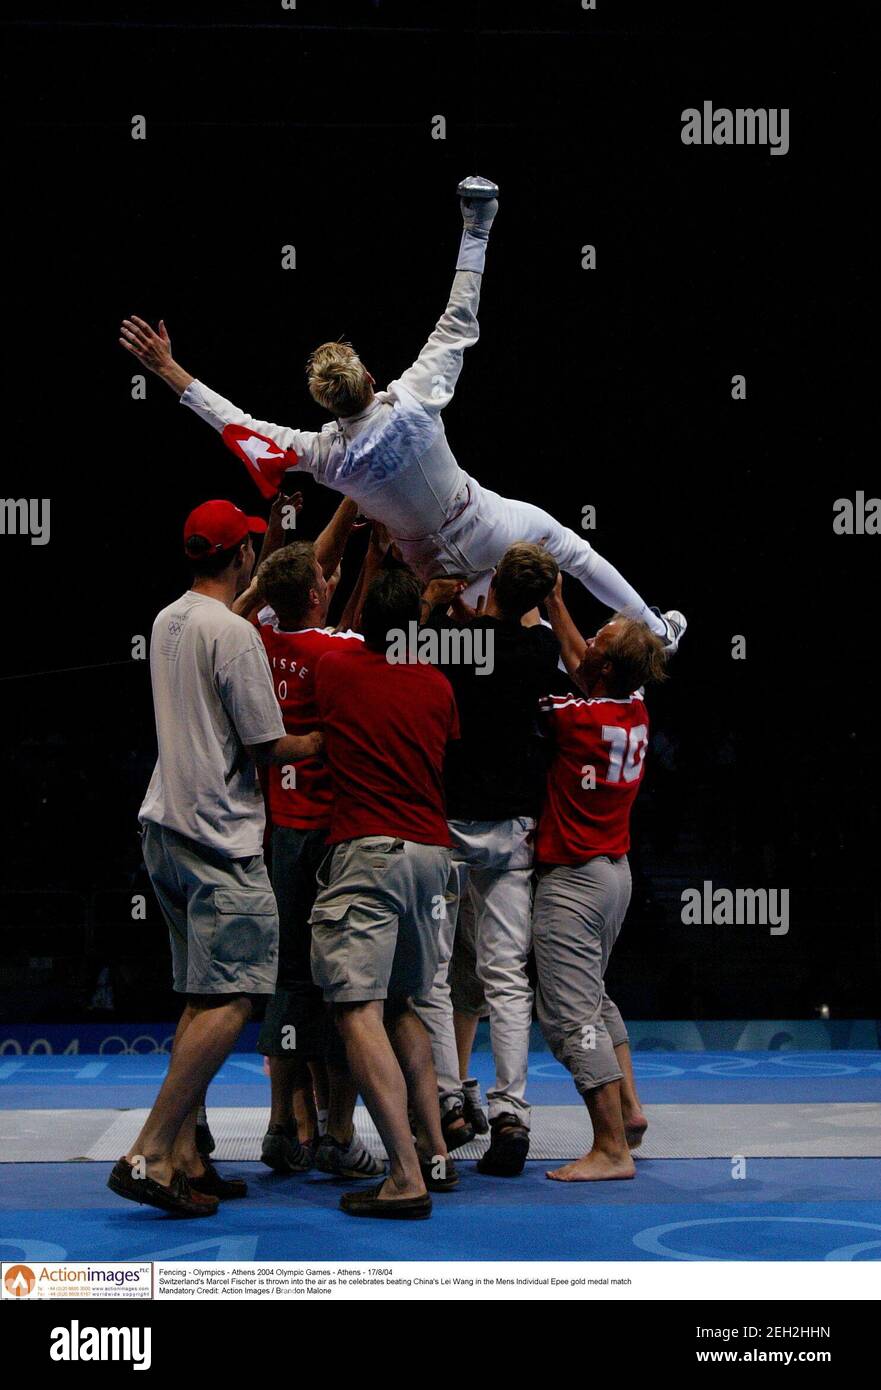 Fechten - Olympische Spiele Athen 2004 Olympische Spiele - Athen - 17/8/04  der Schweizer Marcel Fischer wird in die Luft geworfen, als er Chinas Lei  Wang im Einzel-Epee-Goldmedaillenspiel der Herren feiert.Pflichtangabe:  Action